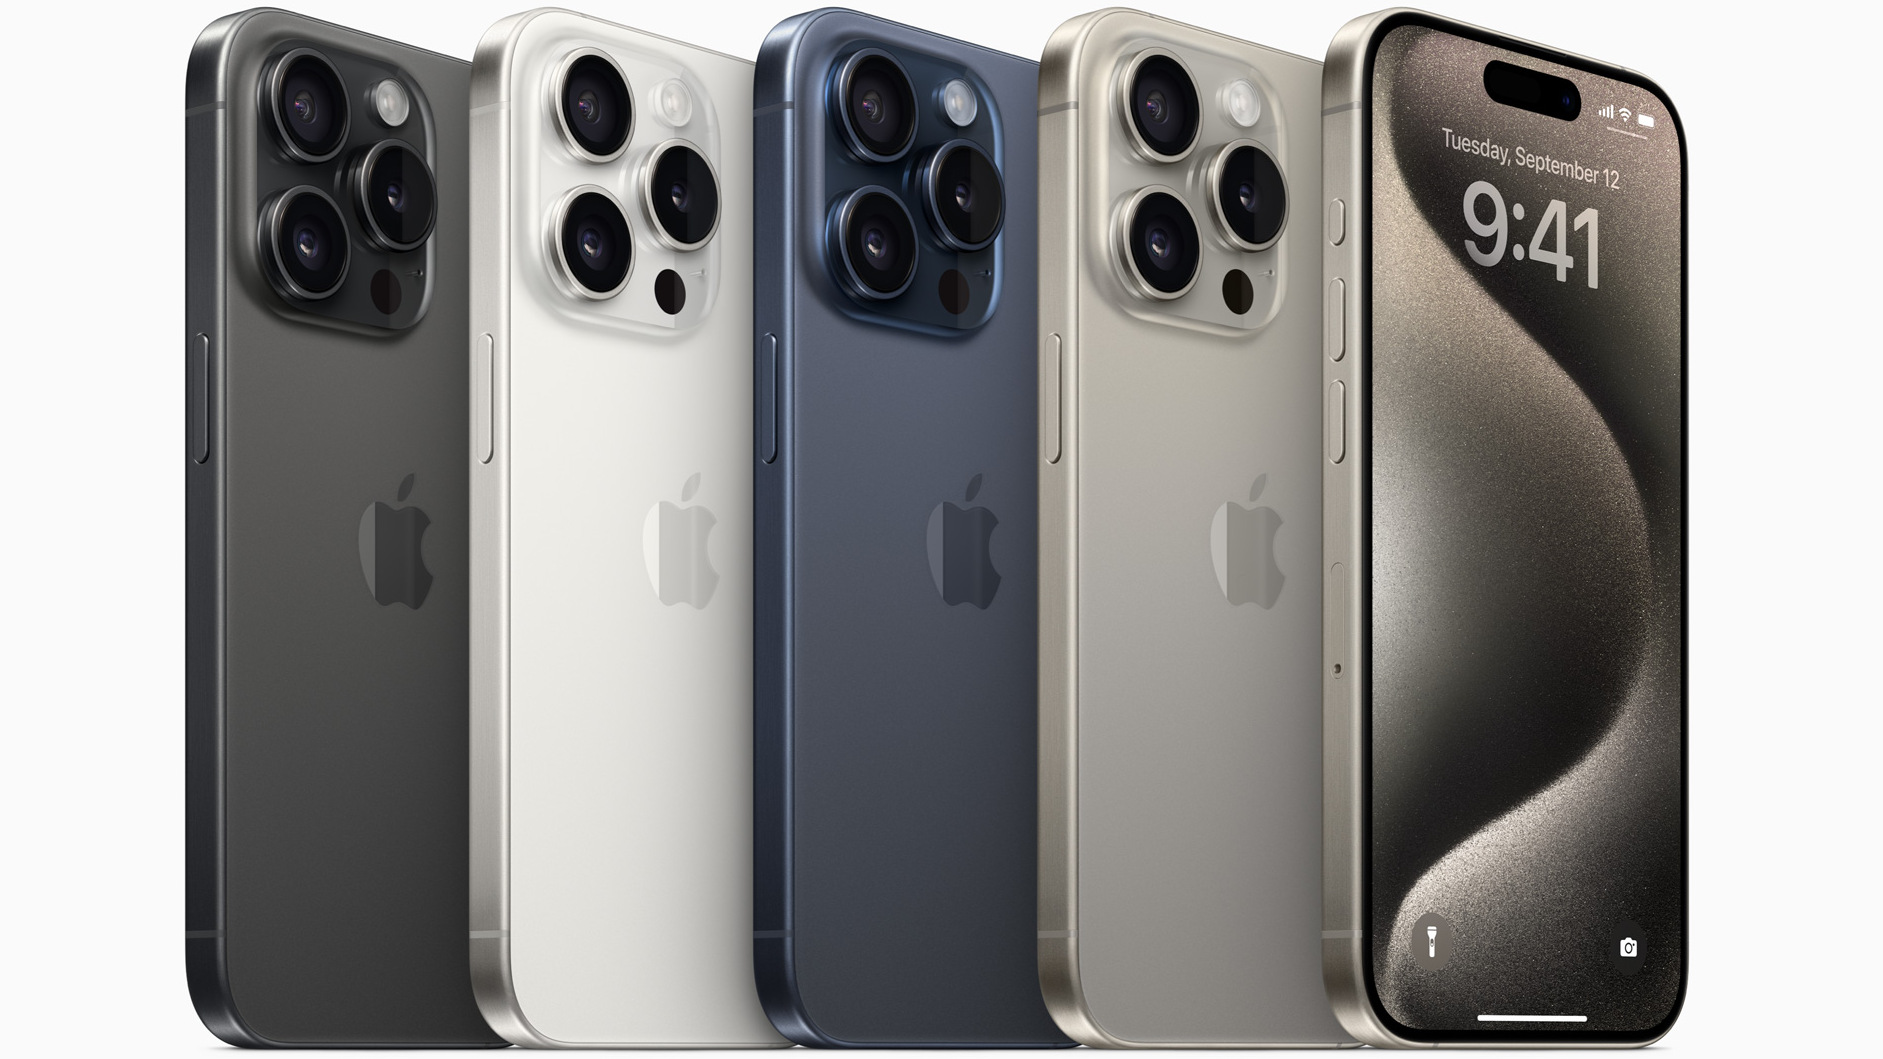 Apple conmociona a la competencia: el iPhone domina los 10 smartphones más  vendidos con siete modelos -  News